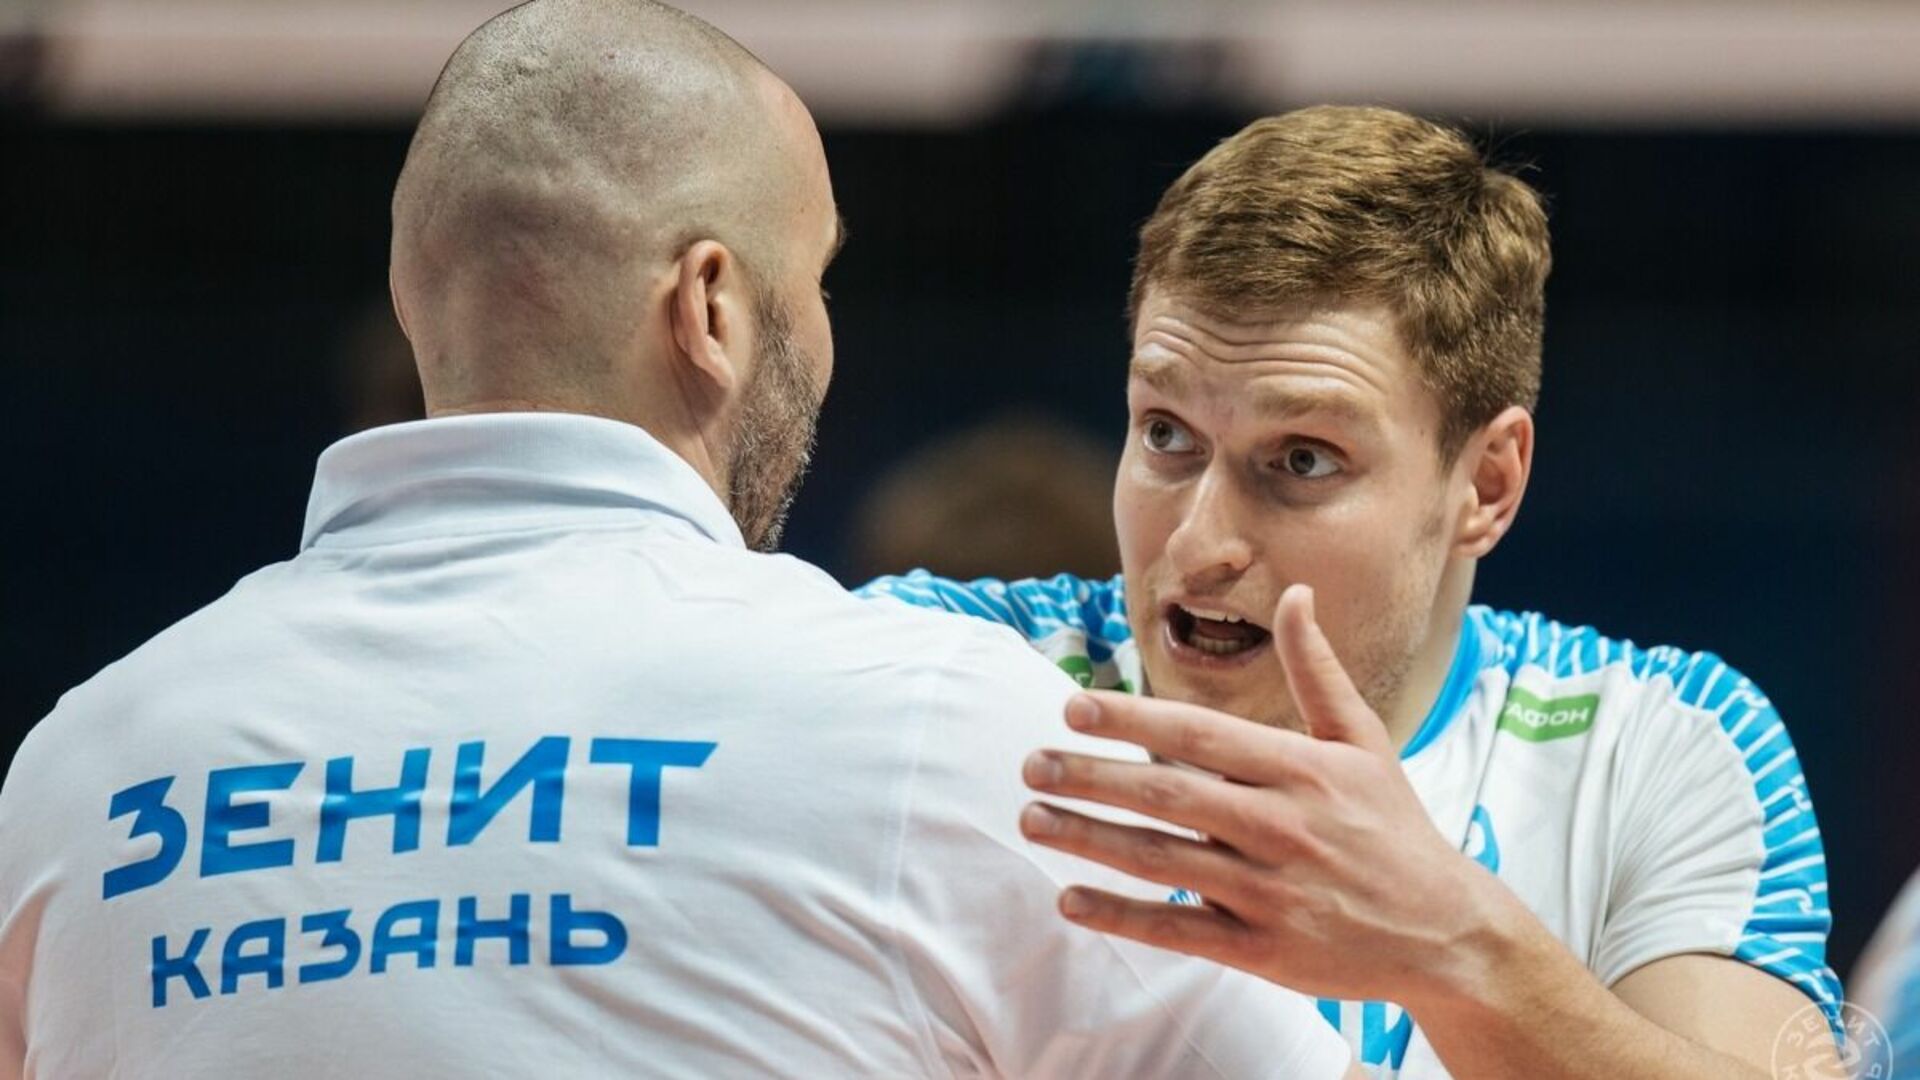 Волейбол чемпионат россии мужчины 2023 2024 финалы